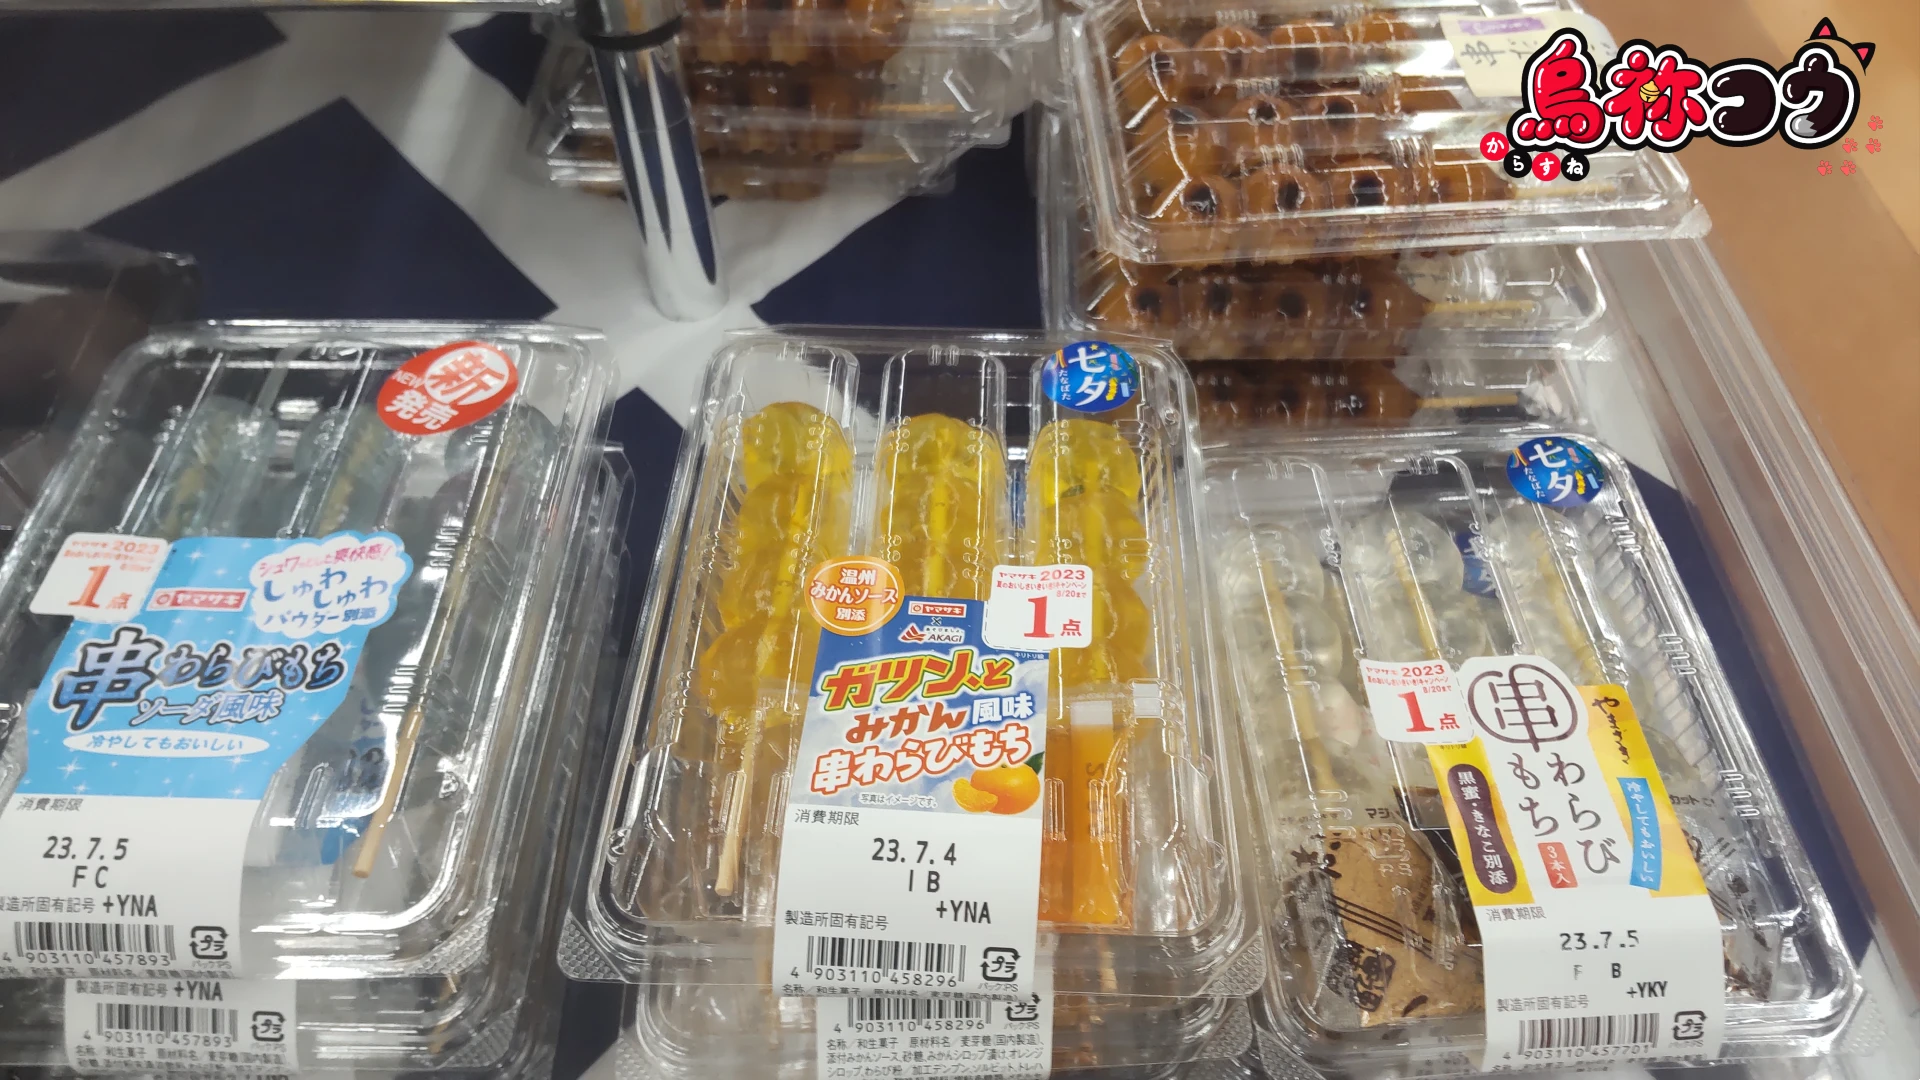 スーパーに陳列されている串わらびもちです。通常タイプとガツンとみかんとソーダ風味があります